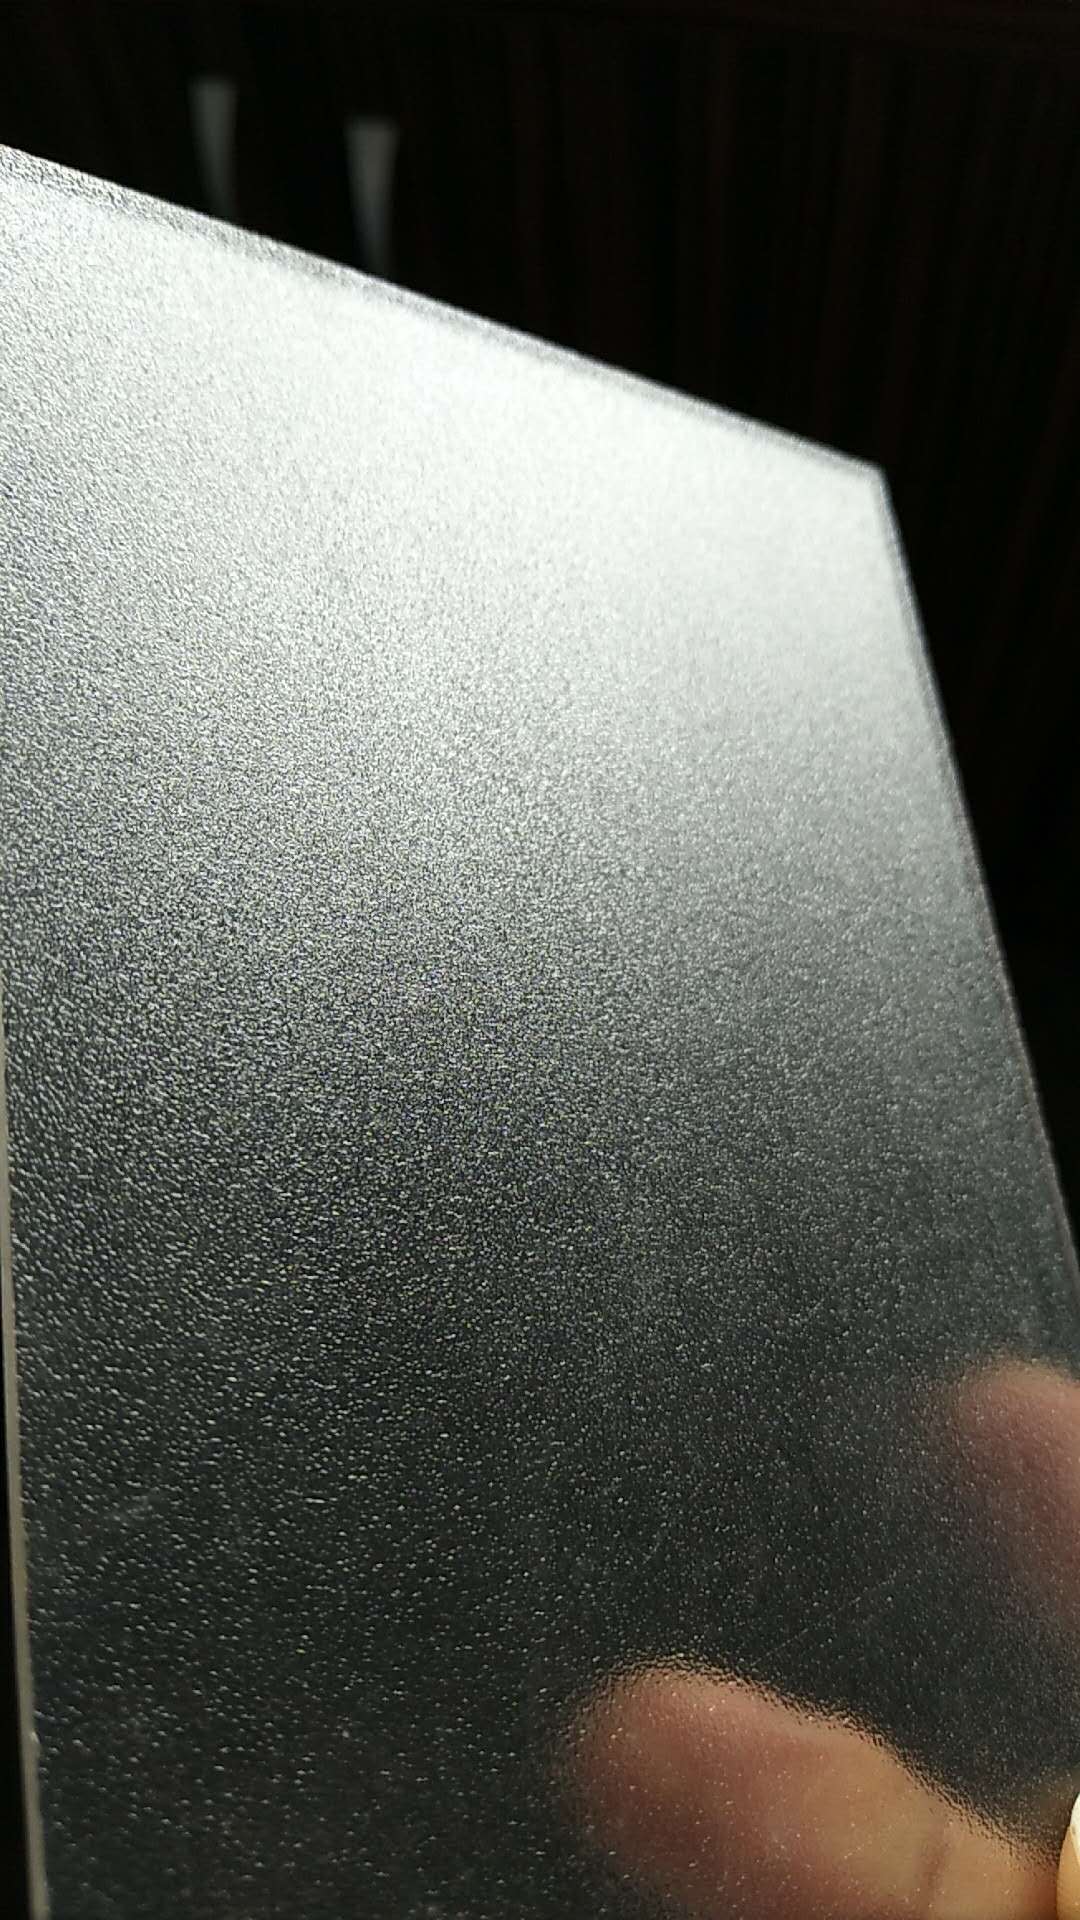 广东耐力板3mm磨砂耐力板半透明磨砂PC板片材隔音雨棚材料采光板